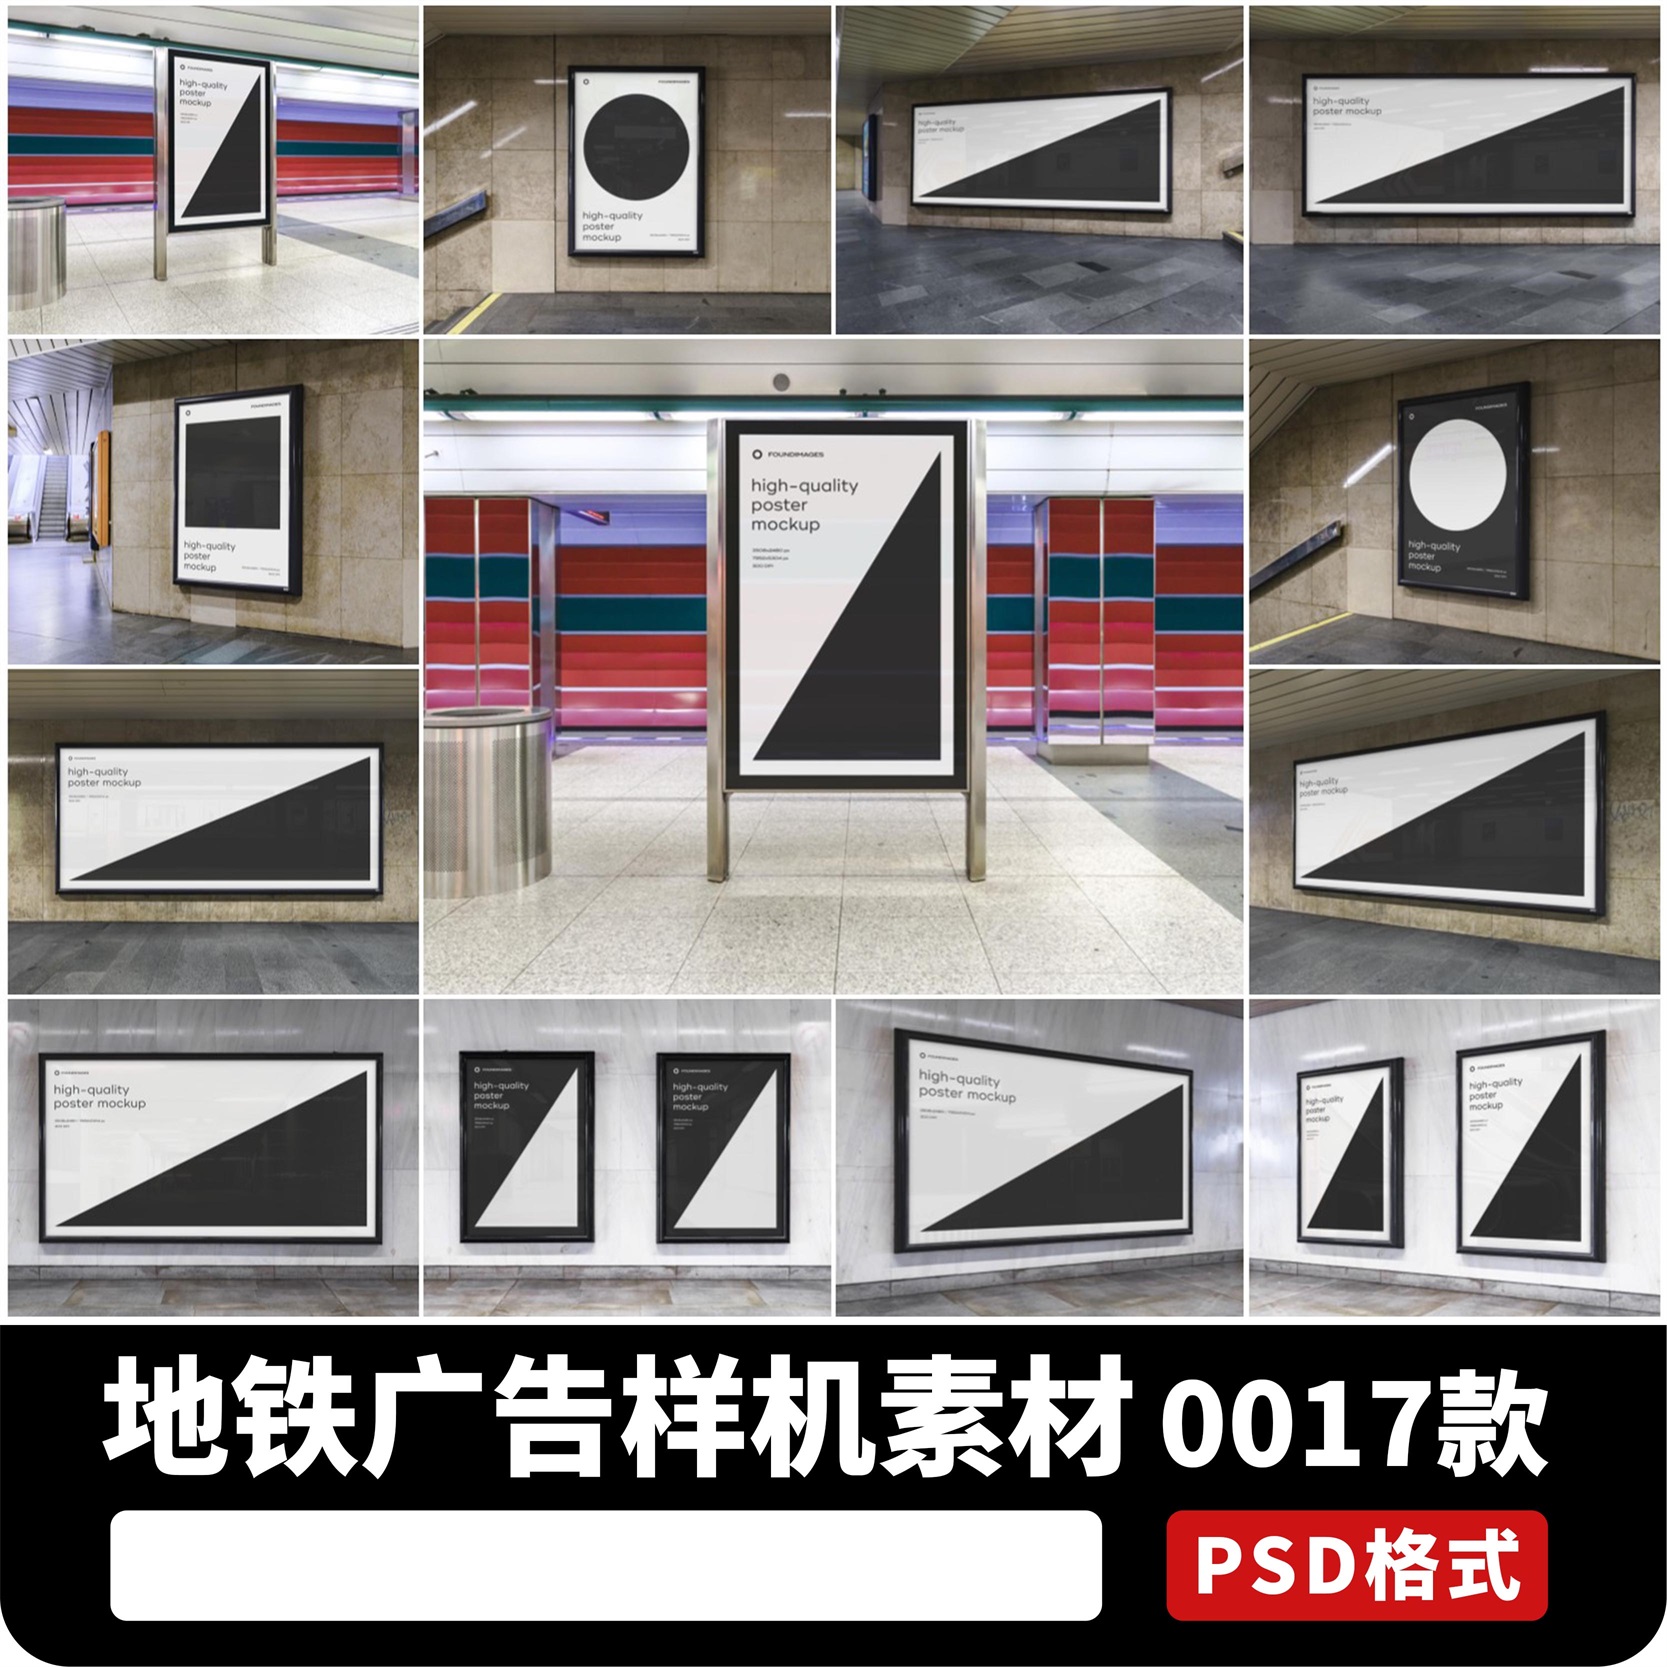 地铁场景站台过道楼梯口广告灯箱样机贴图效果展示PSD设计素材PS